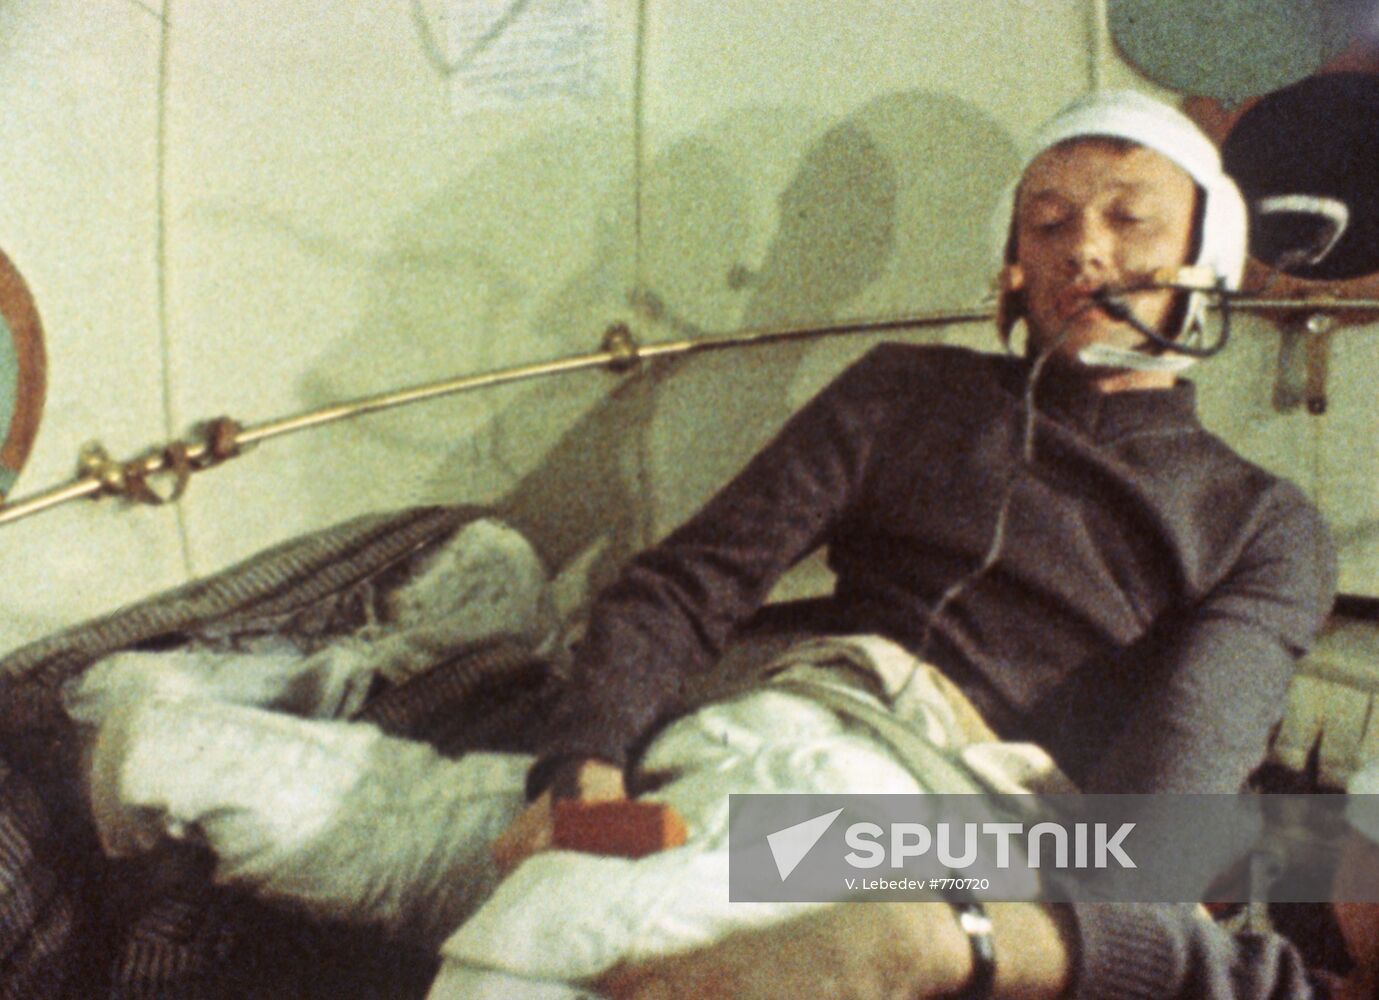 Alexei Yeliseev taking his spacesuit on before spacewalk